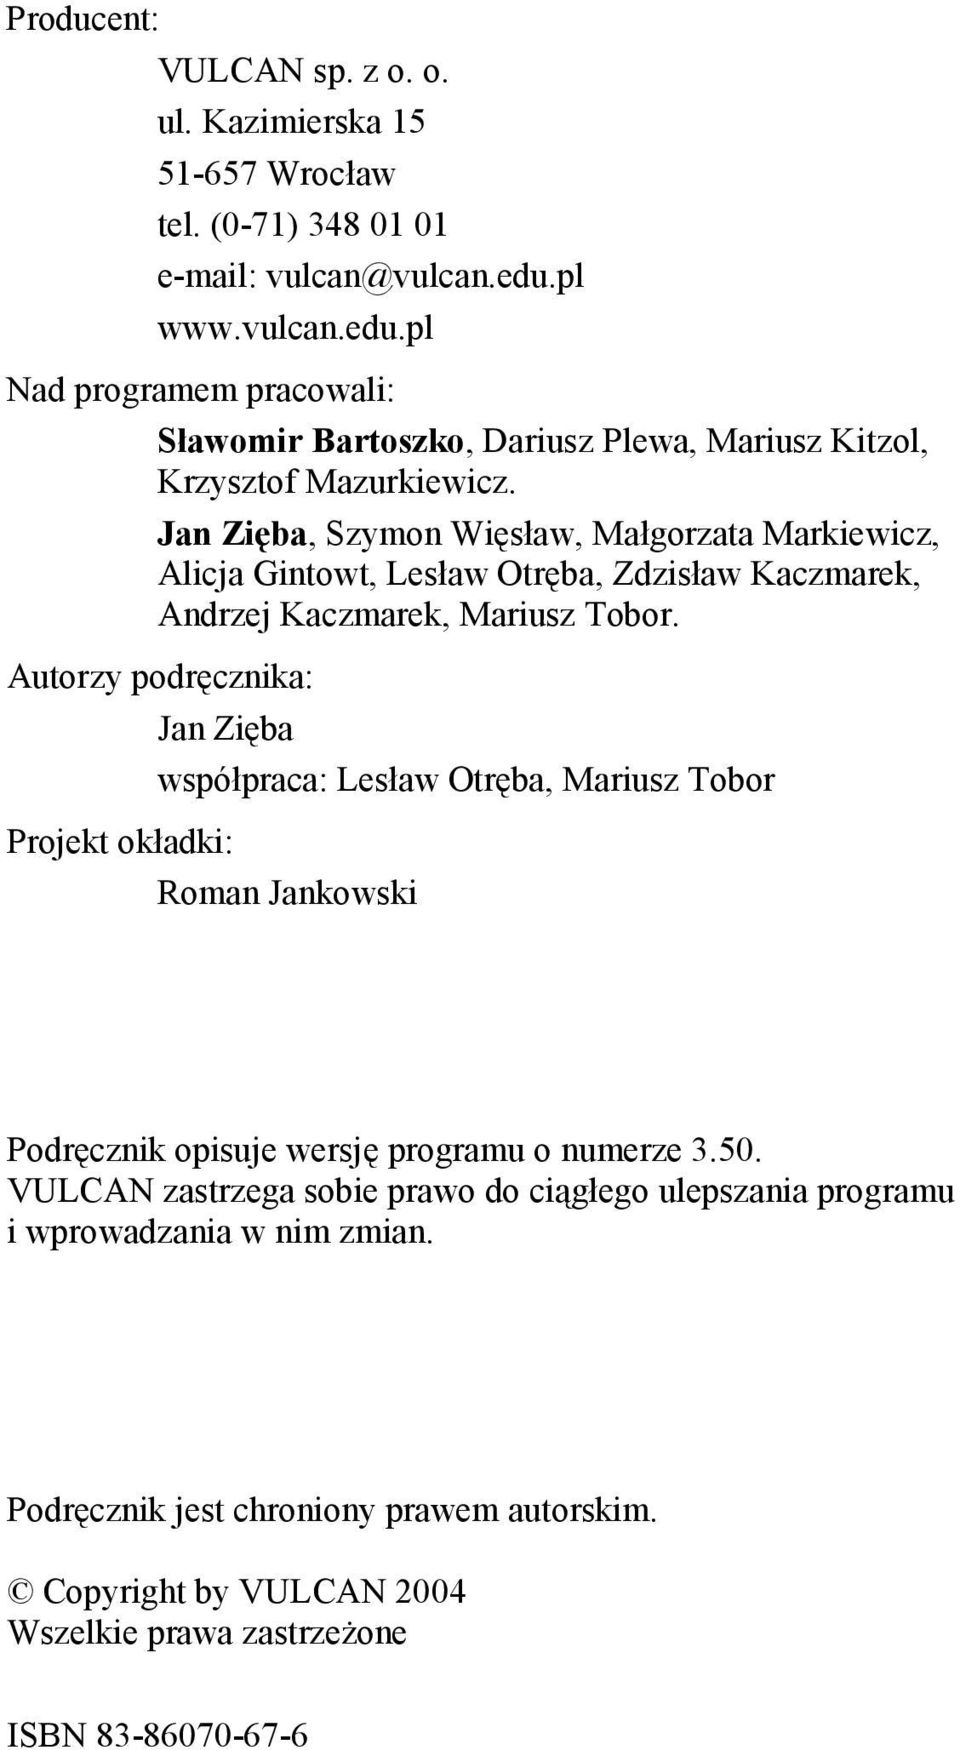 Jan Zięba, Szymon Więsław, Małgorzata Markiewicz, Alicja Gintowt, Lesław Otręba, Zdzisław Kaczmarek, Andrzej Kaczmarek, Mariusz Tobor.